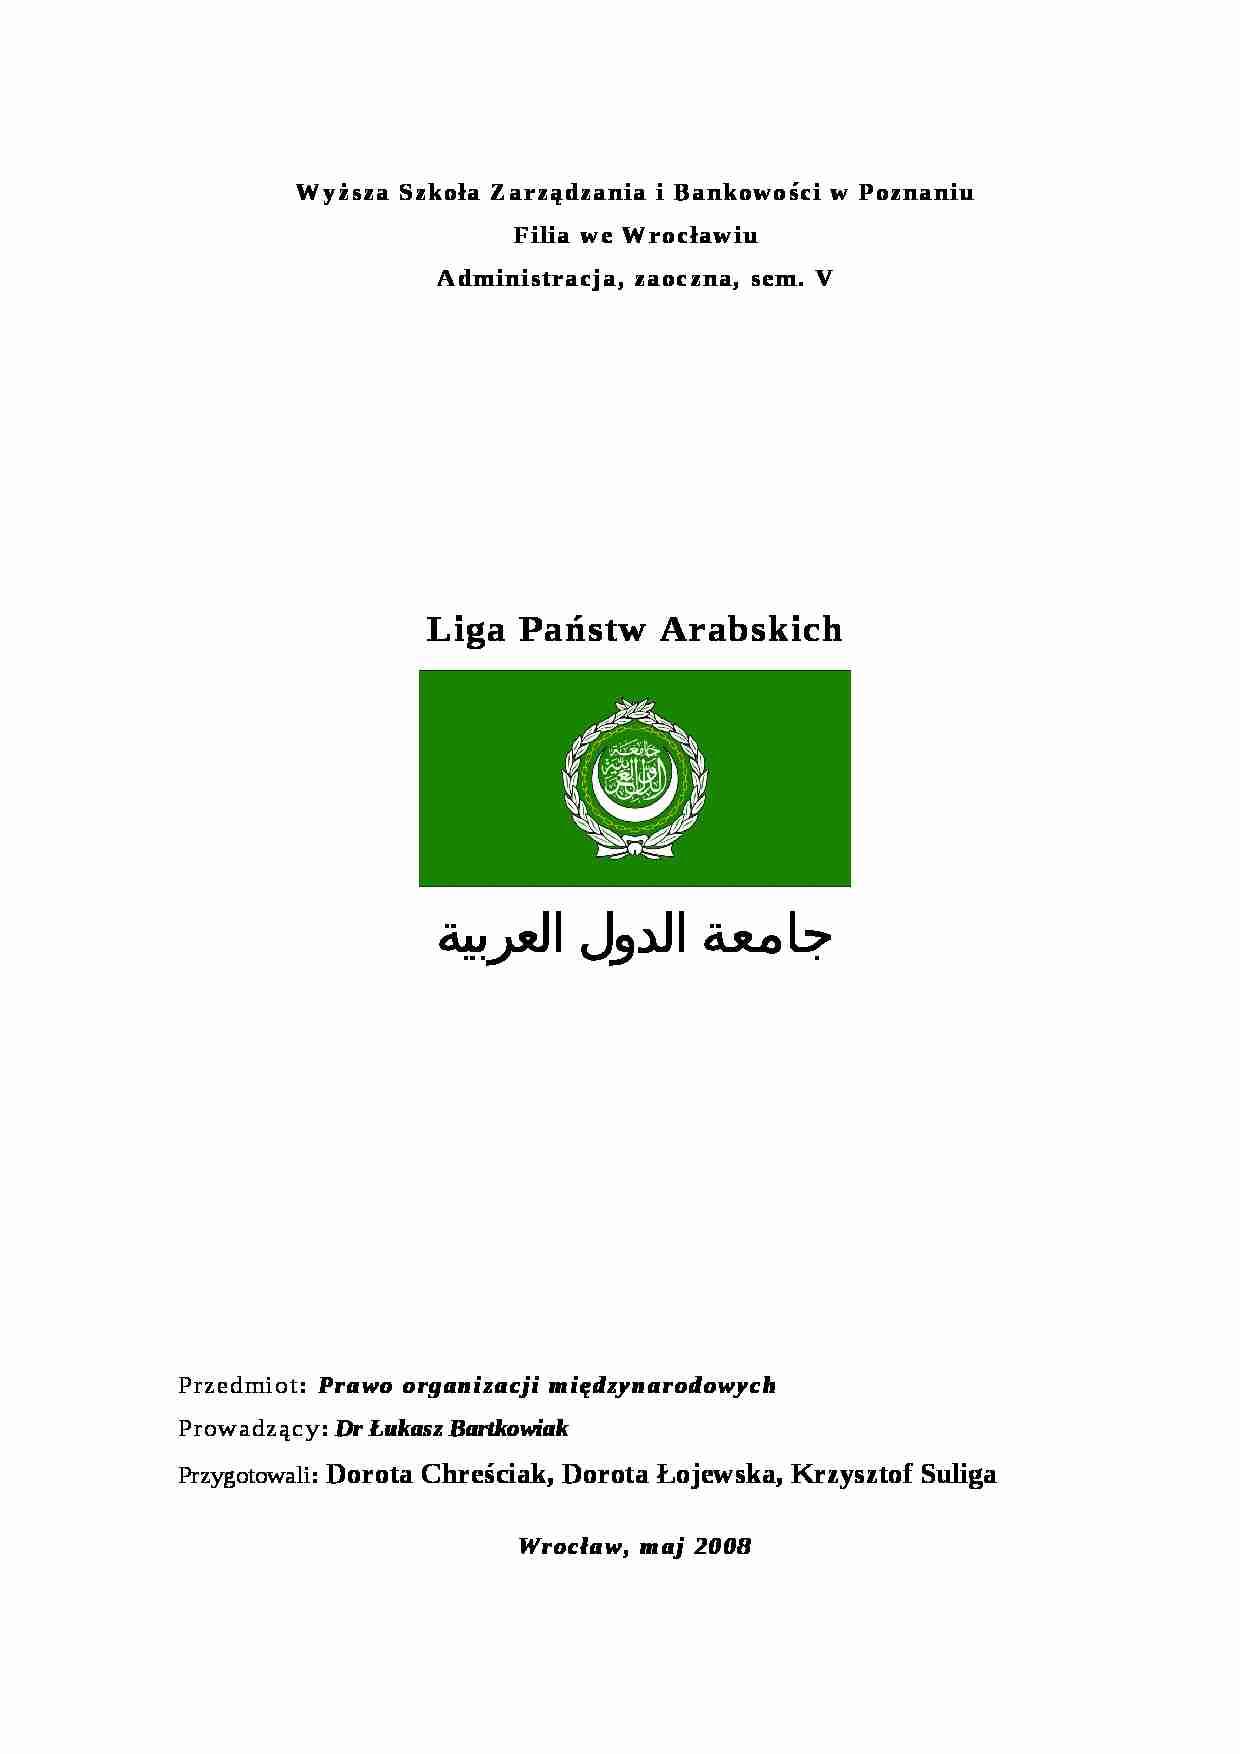 Liga Państw Arabskich - strona 1